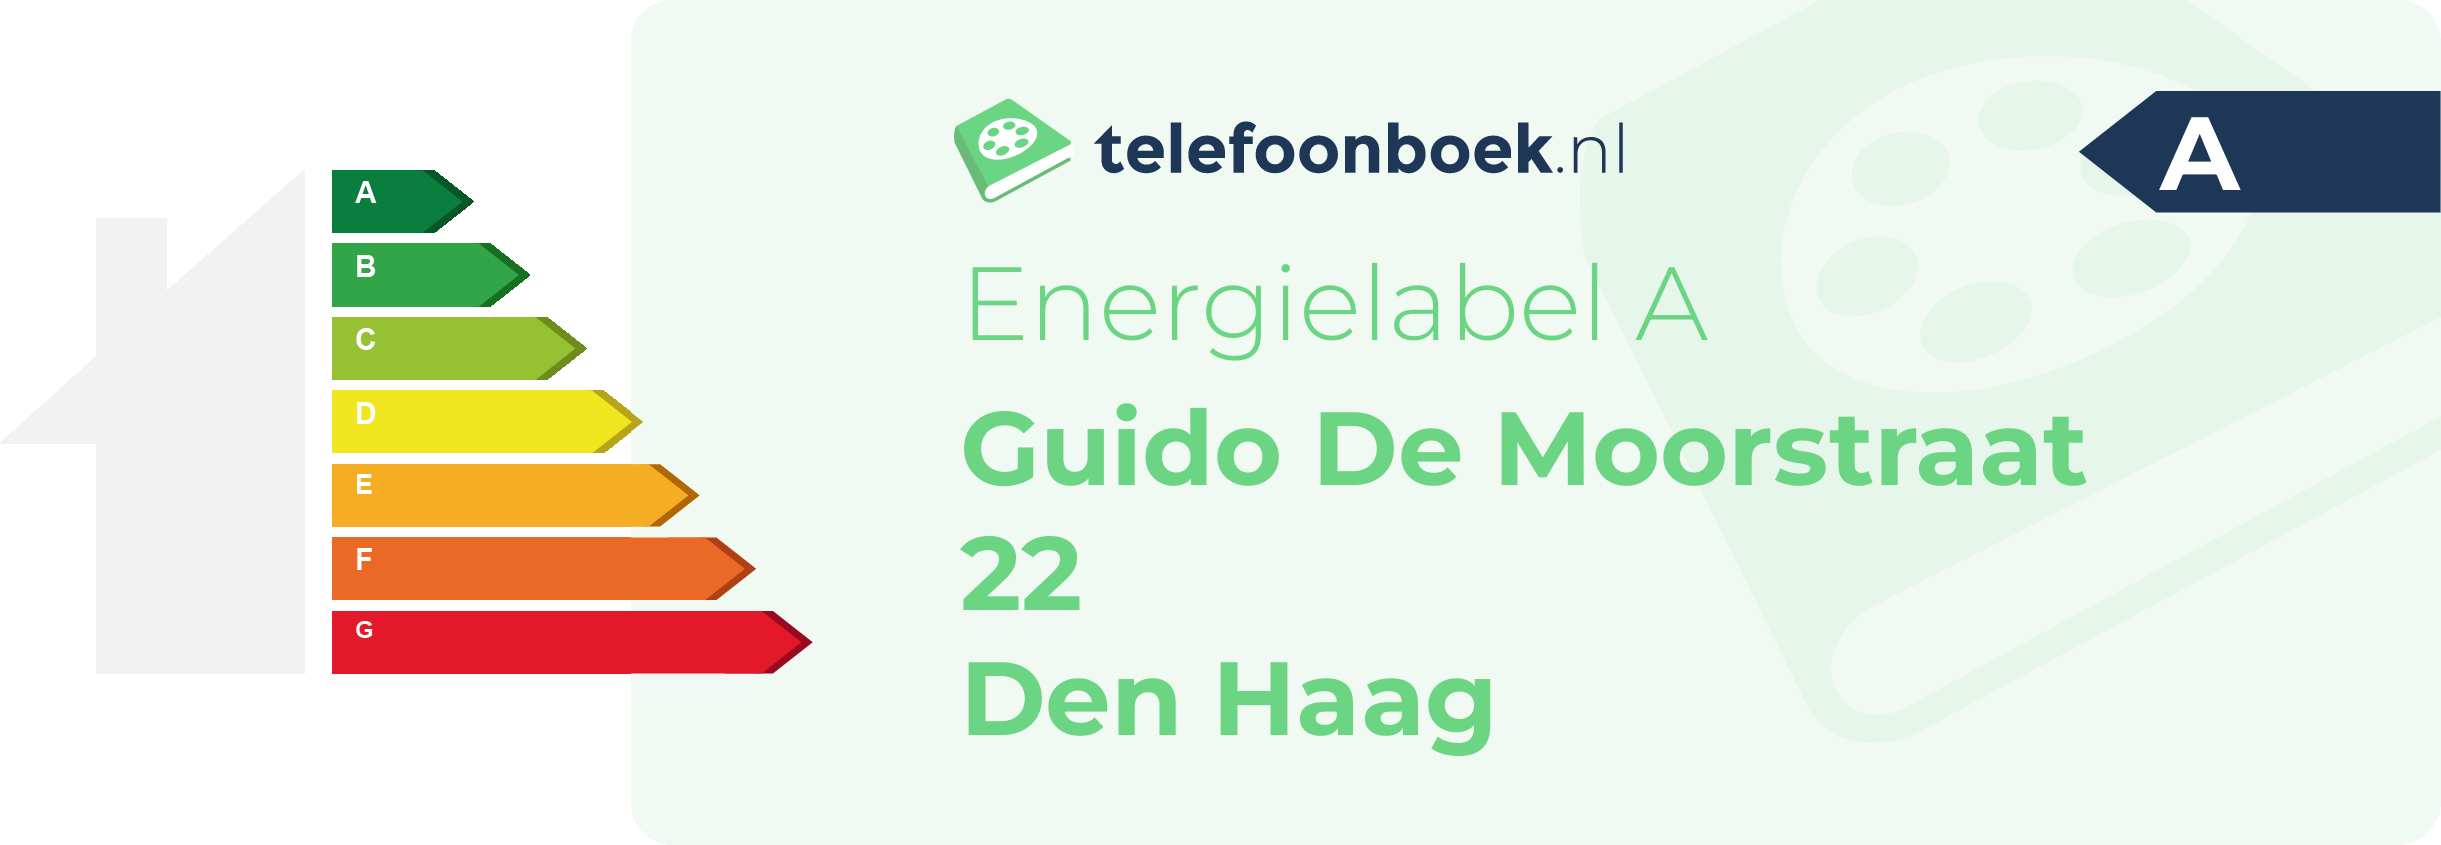 Energielabel Guido De Moorstraat 22 Den Haag